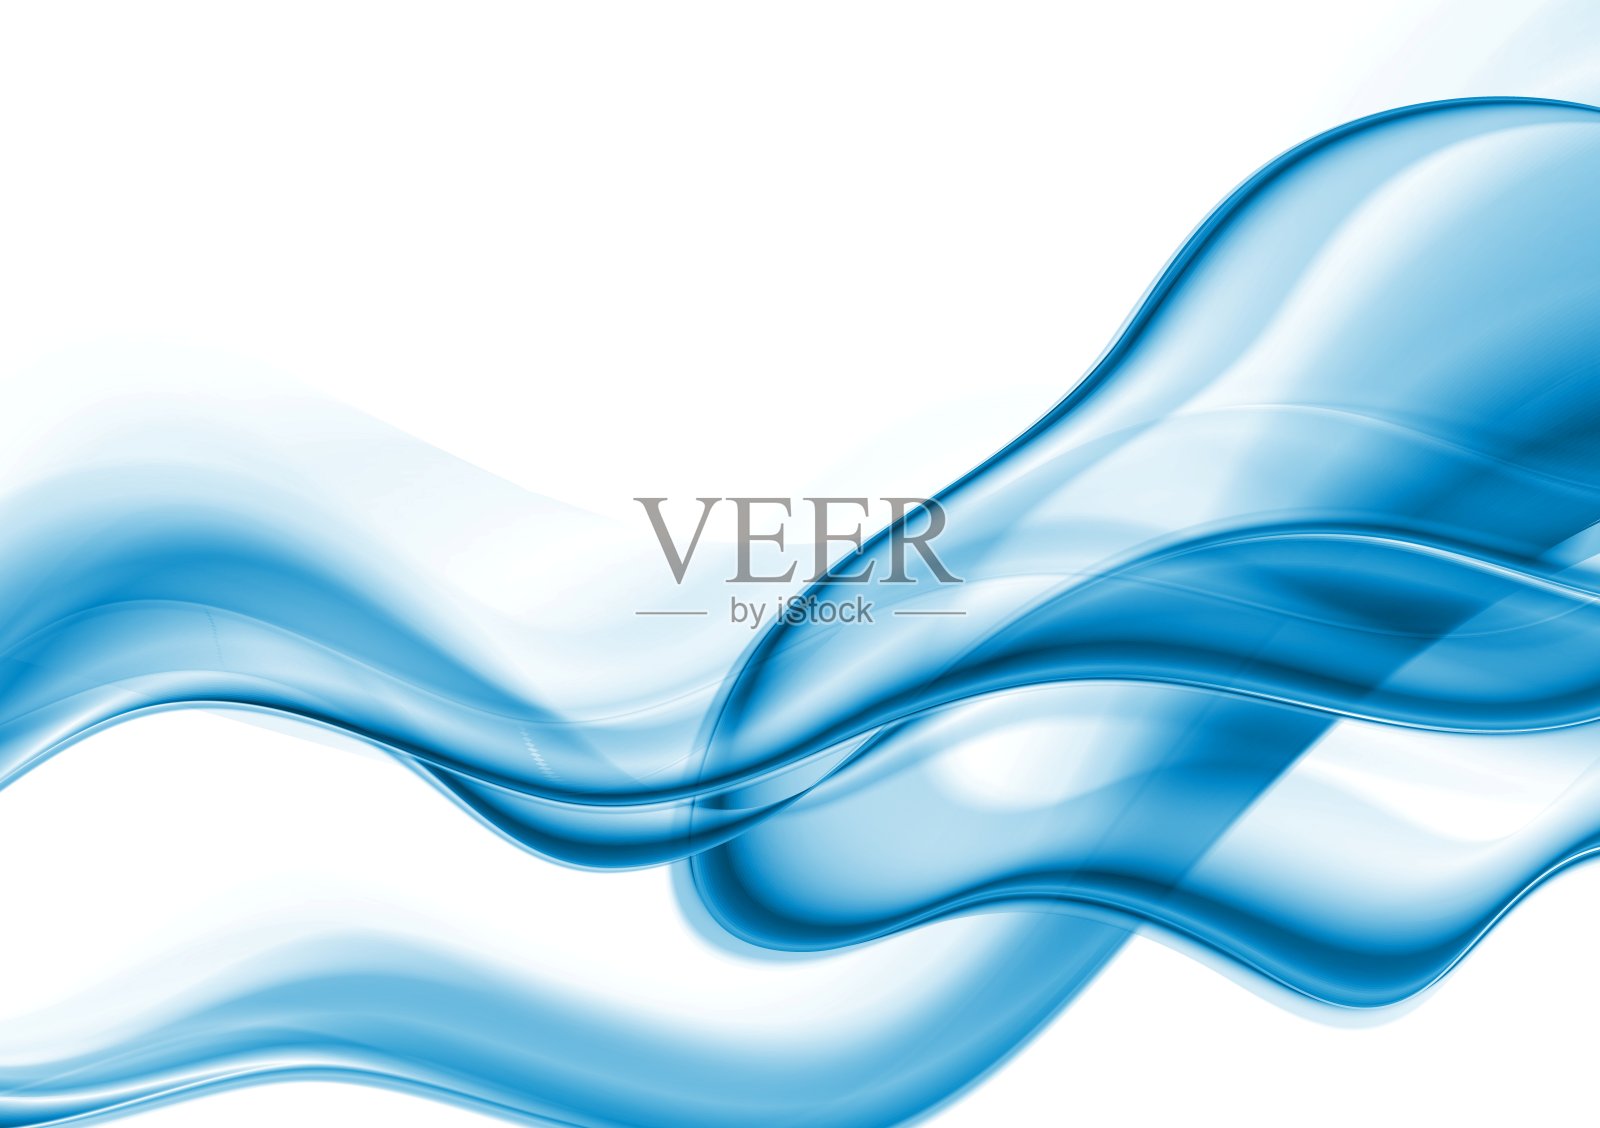 明亮的蓝色波浪抽象背景插画图片素材